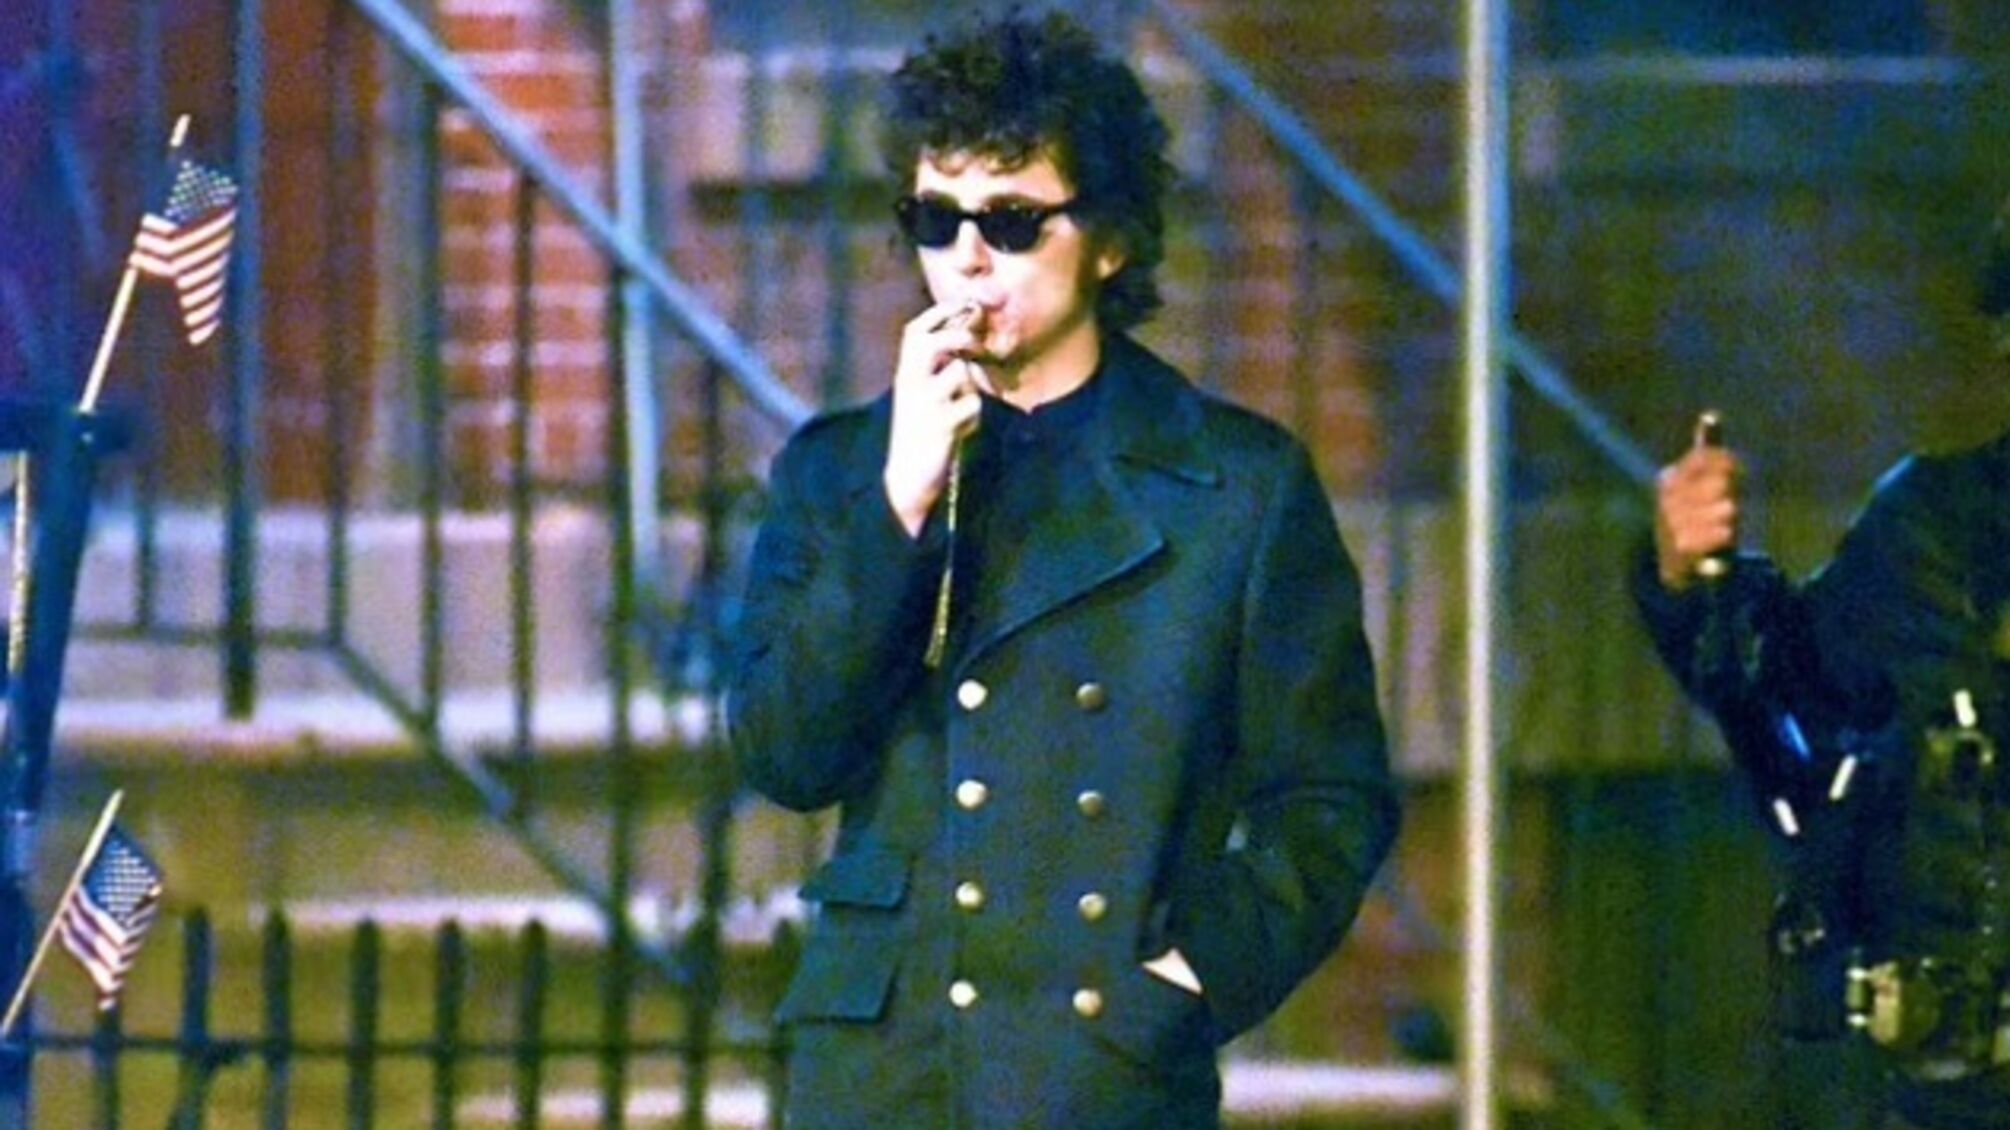 Тимоти Шаламе сфотографировали в роли Боба Дилана во время съемок биографического фильма о музыканте